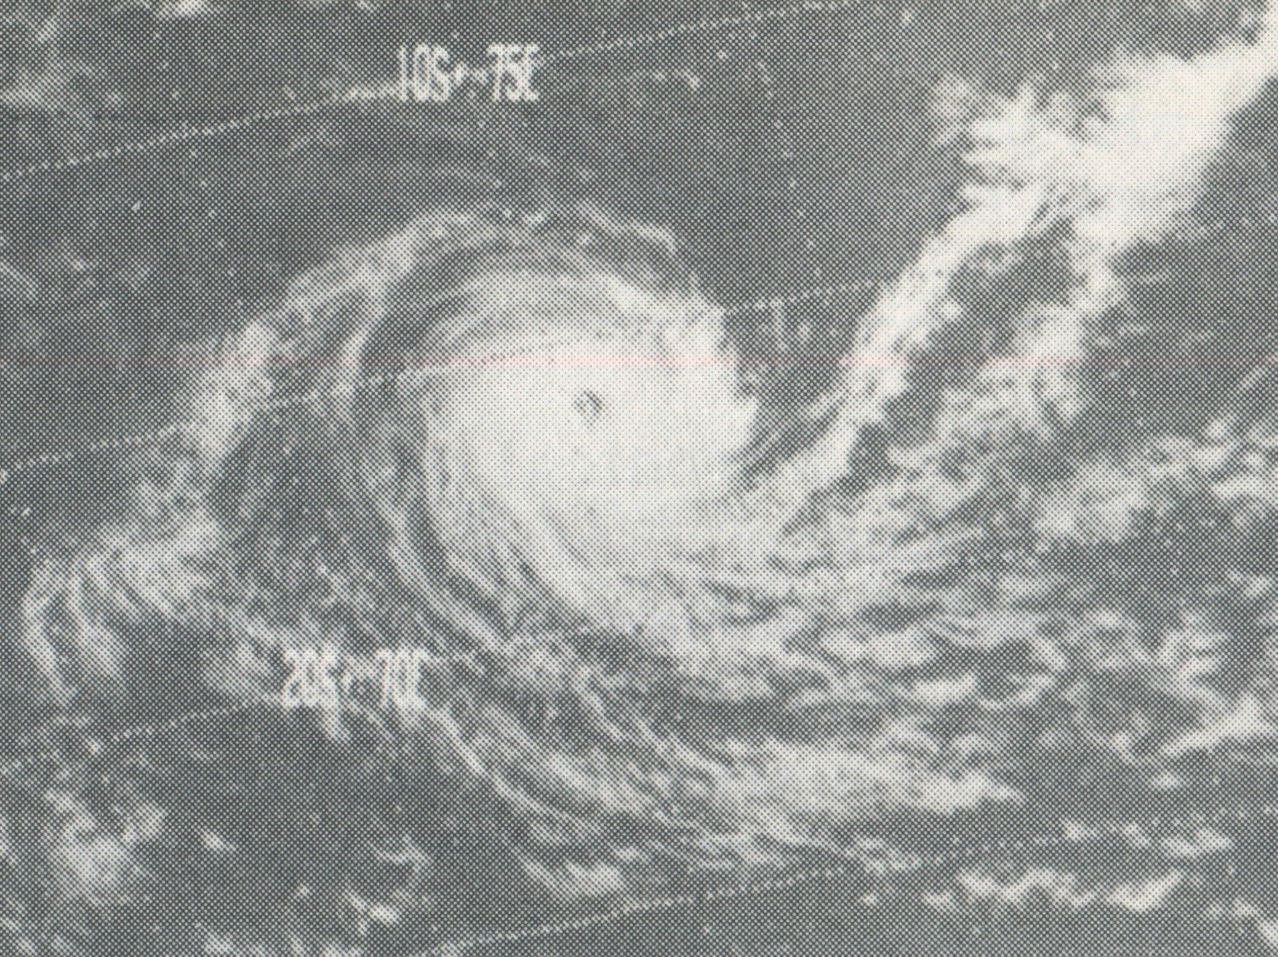 DALIDA-DEIDRE 27 DEC 1973 NOAA